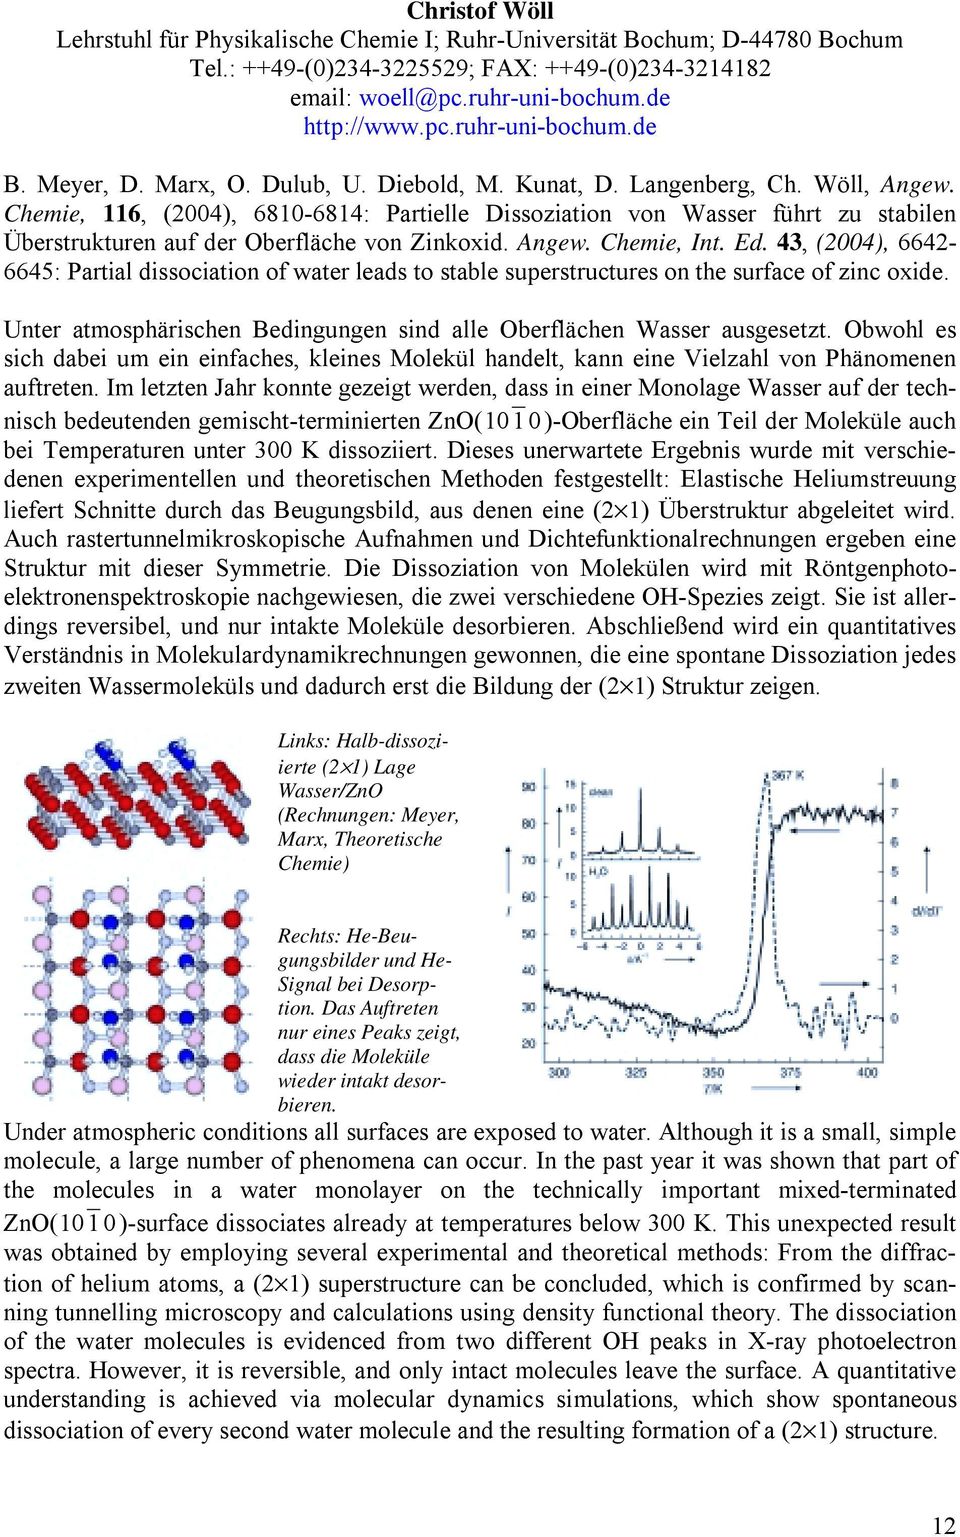 Chemie, 116, (2004), 6810-6814: Partielle Dissoziation von Wasser führt zu stabilen Überstrukturen auf der Oberfläche von Zinkoxid. Angew. Chemie, Int. Ed.